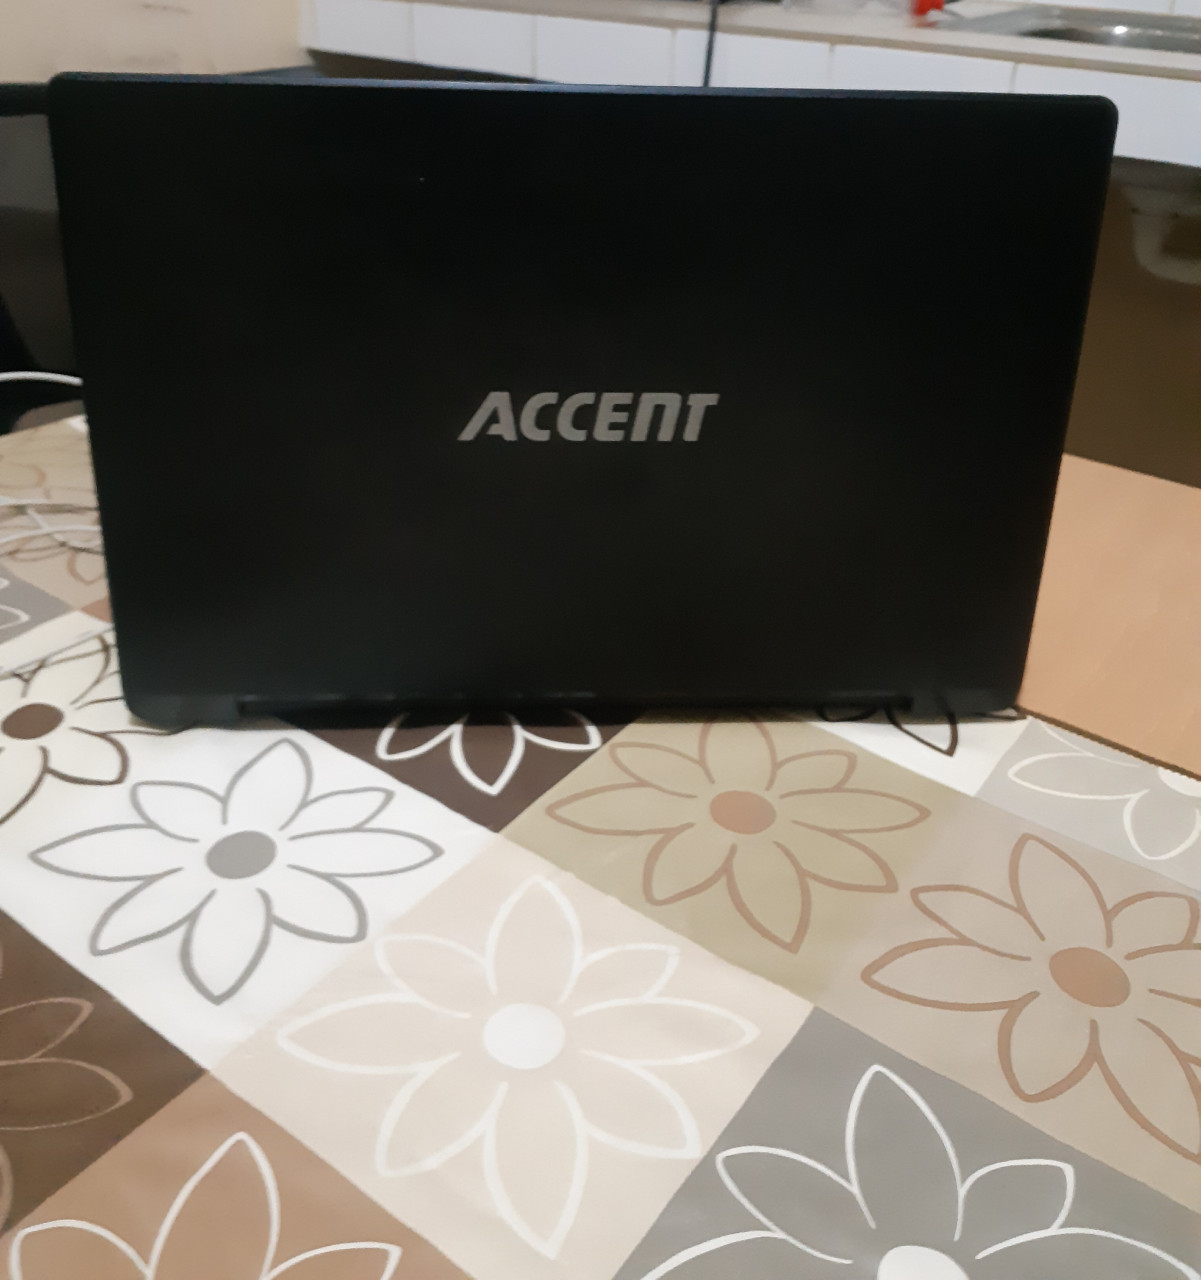 Accent Laptop, Computadores - Laptops, Bissau